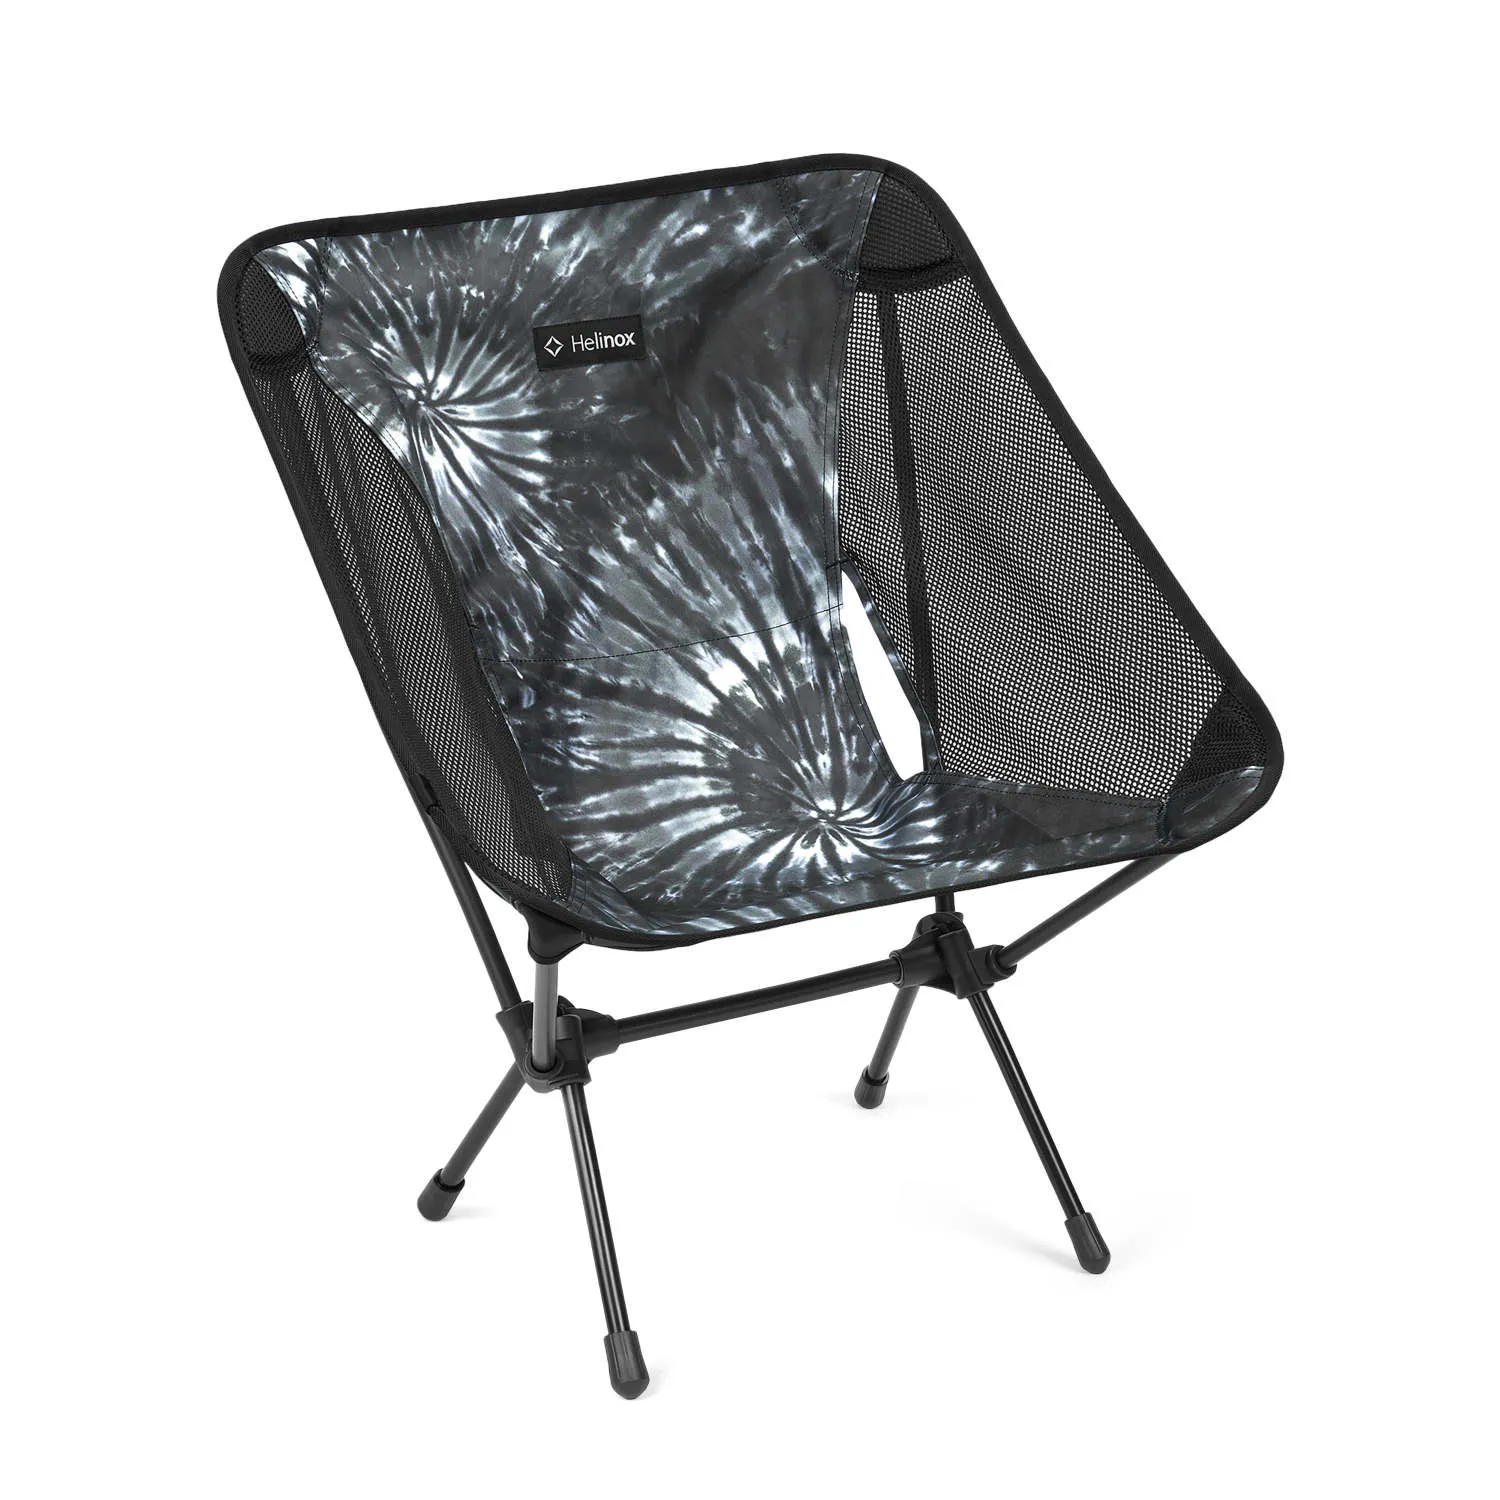 01_Chair One_Black Tie Dye 1.jpg